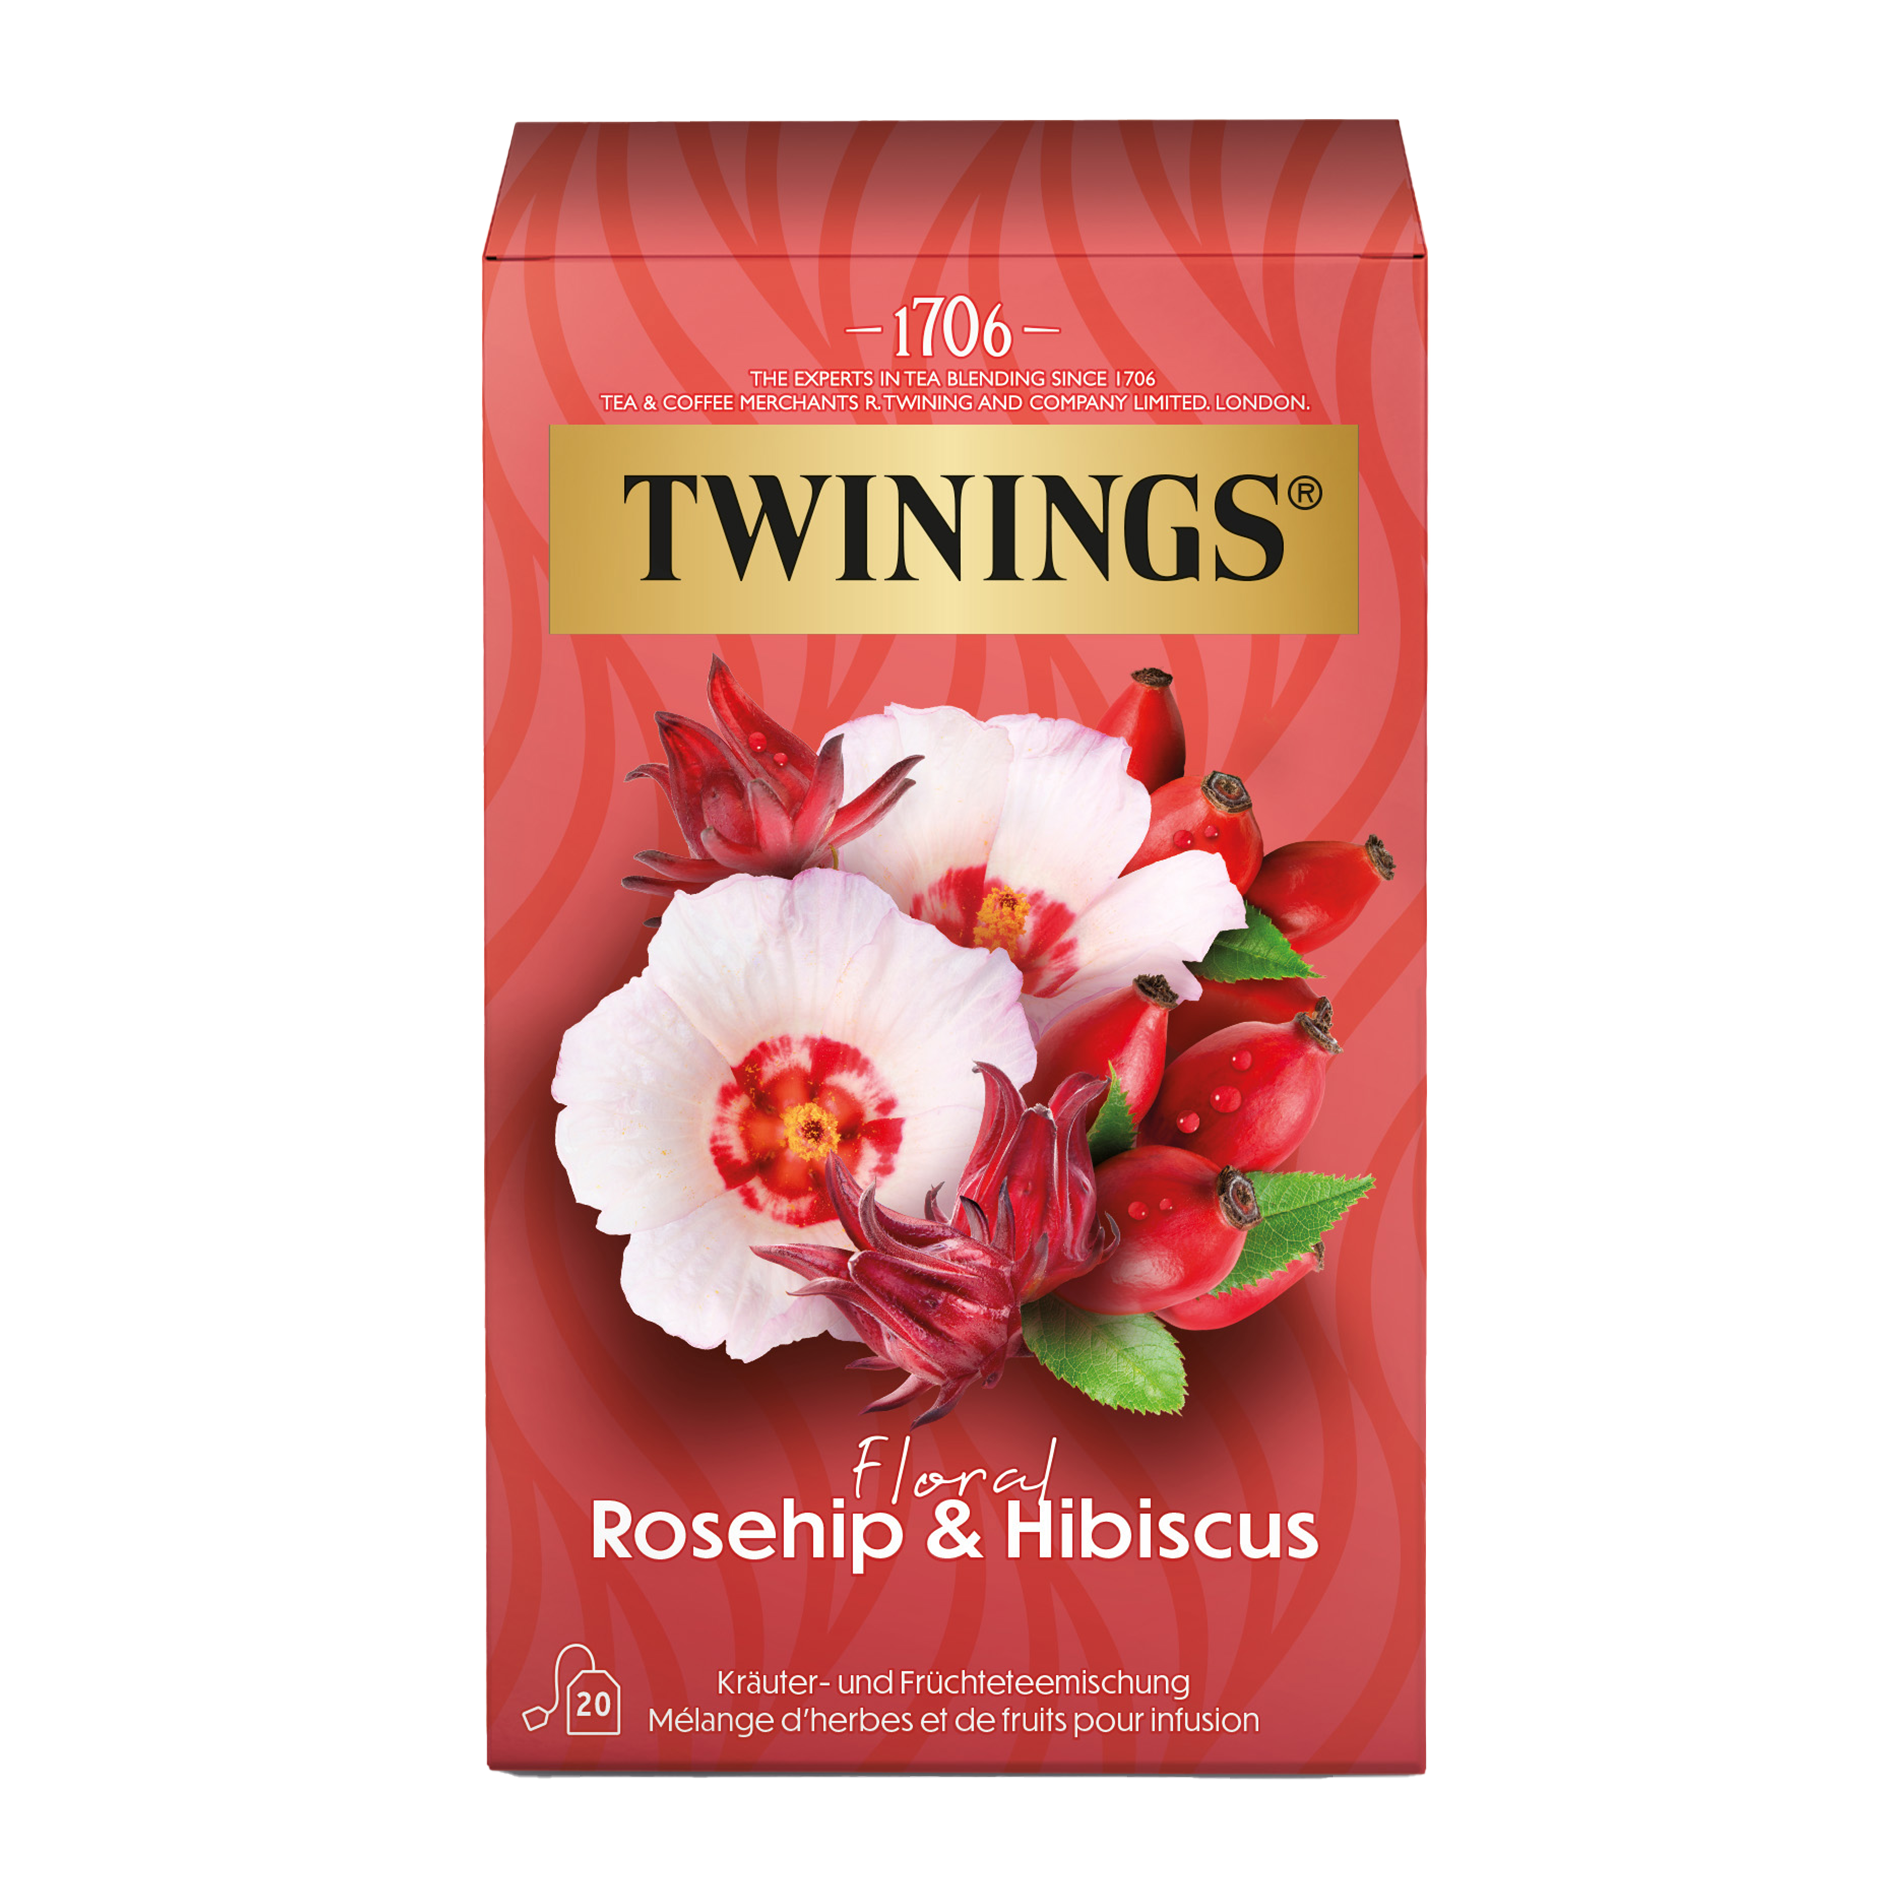  Rosehip & Hibiscus Früchtetee - der Attraktive